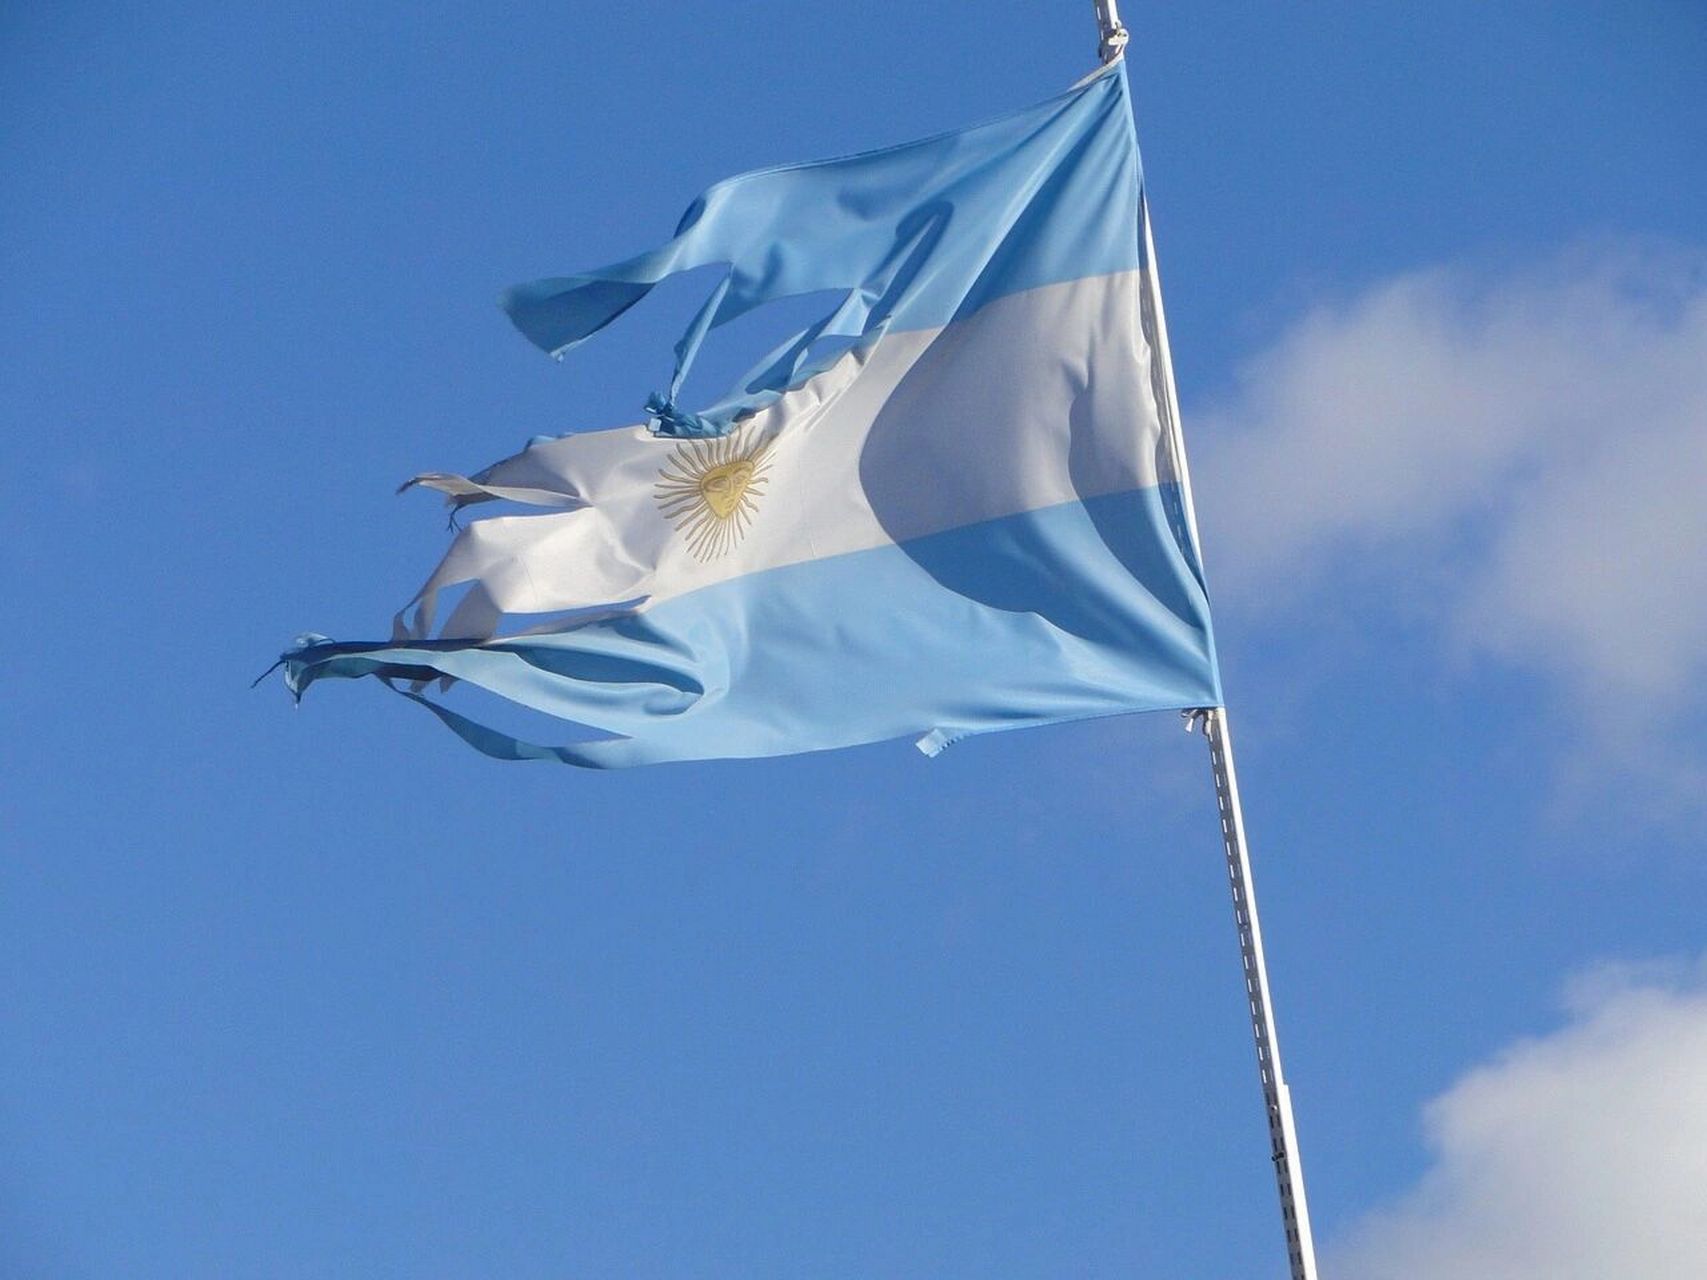 国旗:阿根廷 中文名:阿根廷共和国 外文名:the republic of argentina